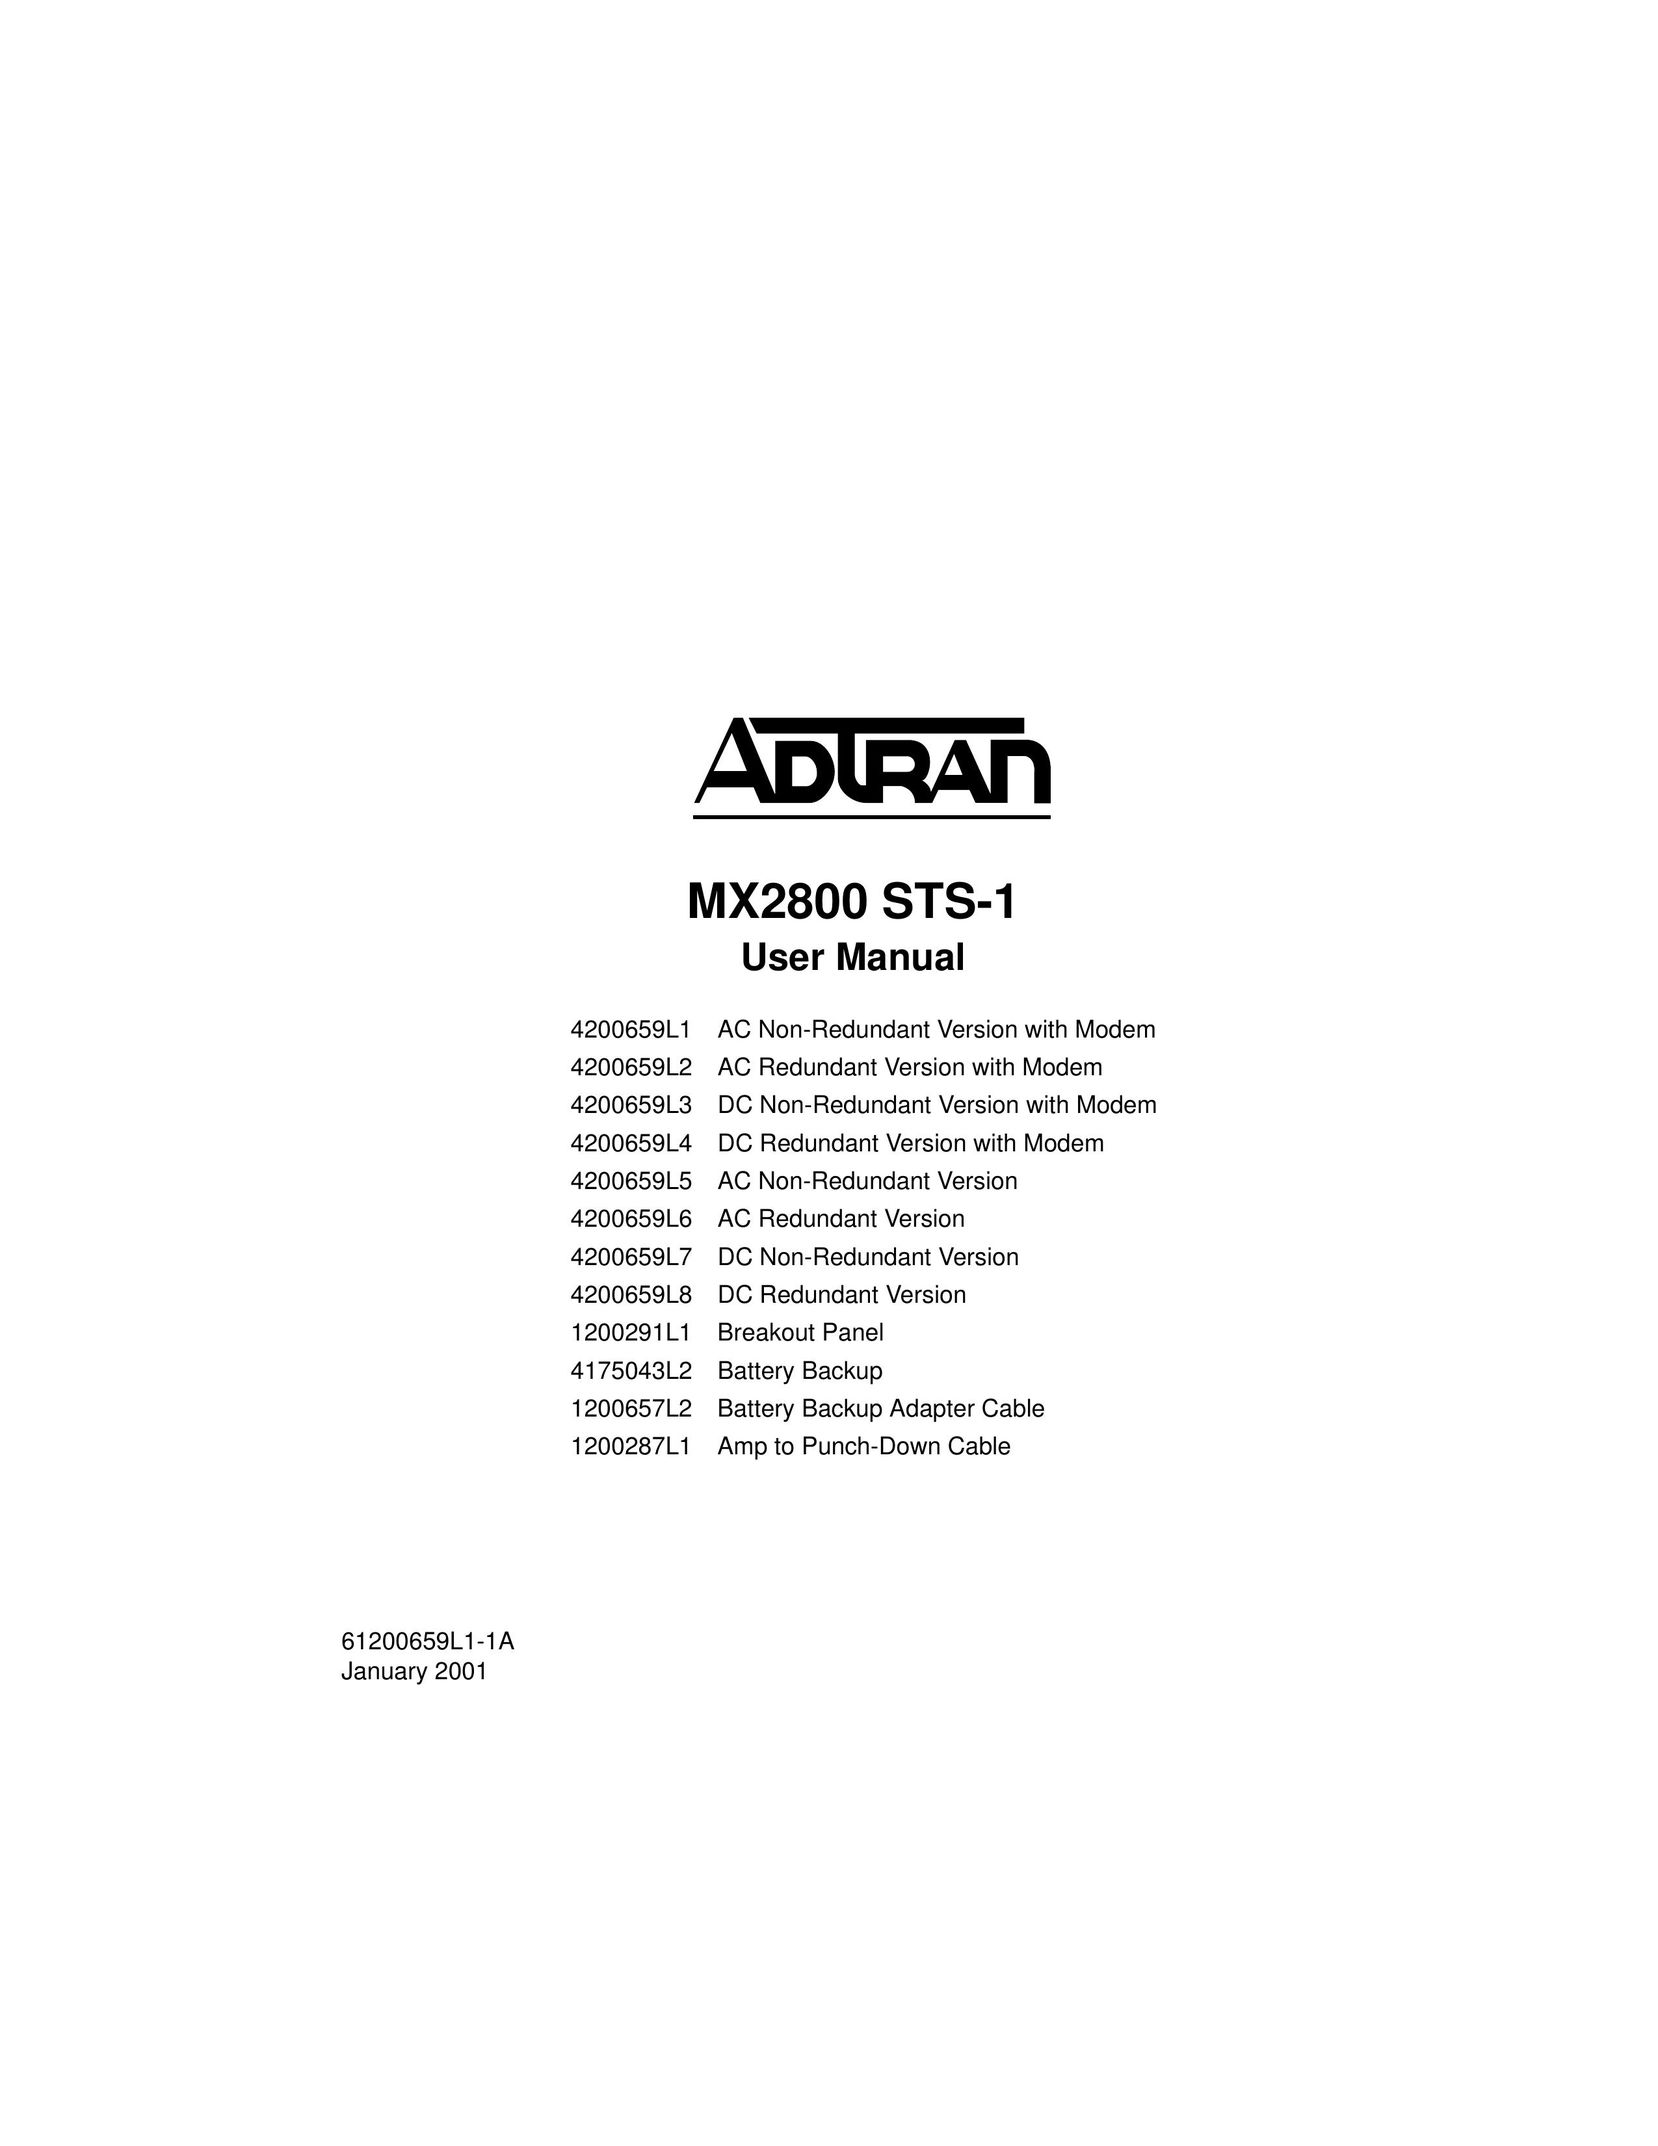 ADTRAN 4200659L5 Switch User Manual